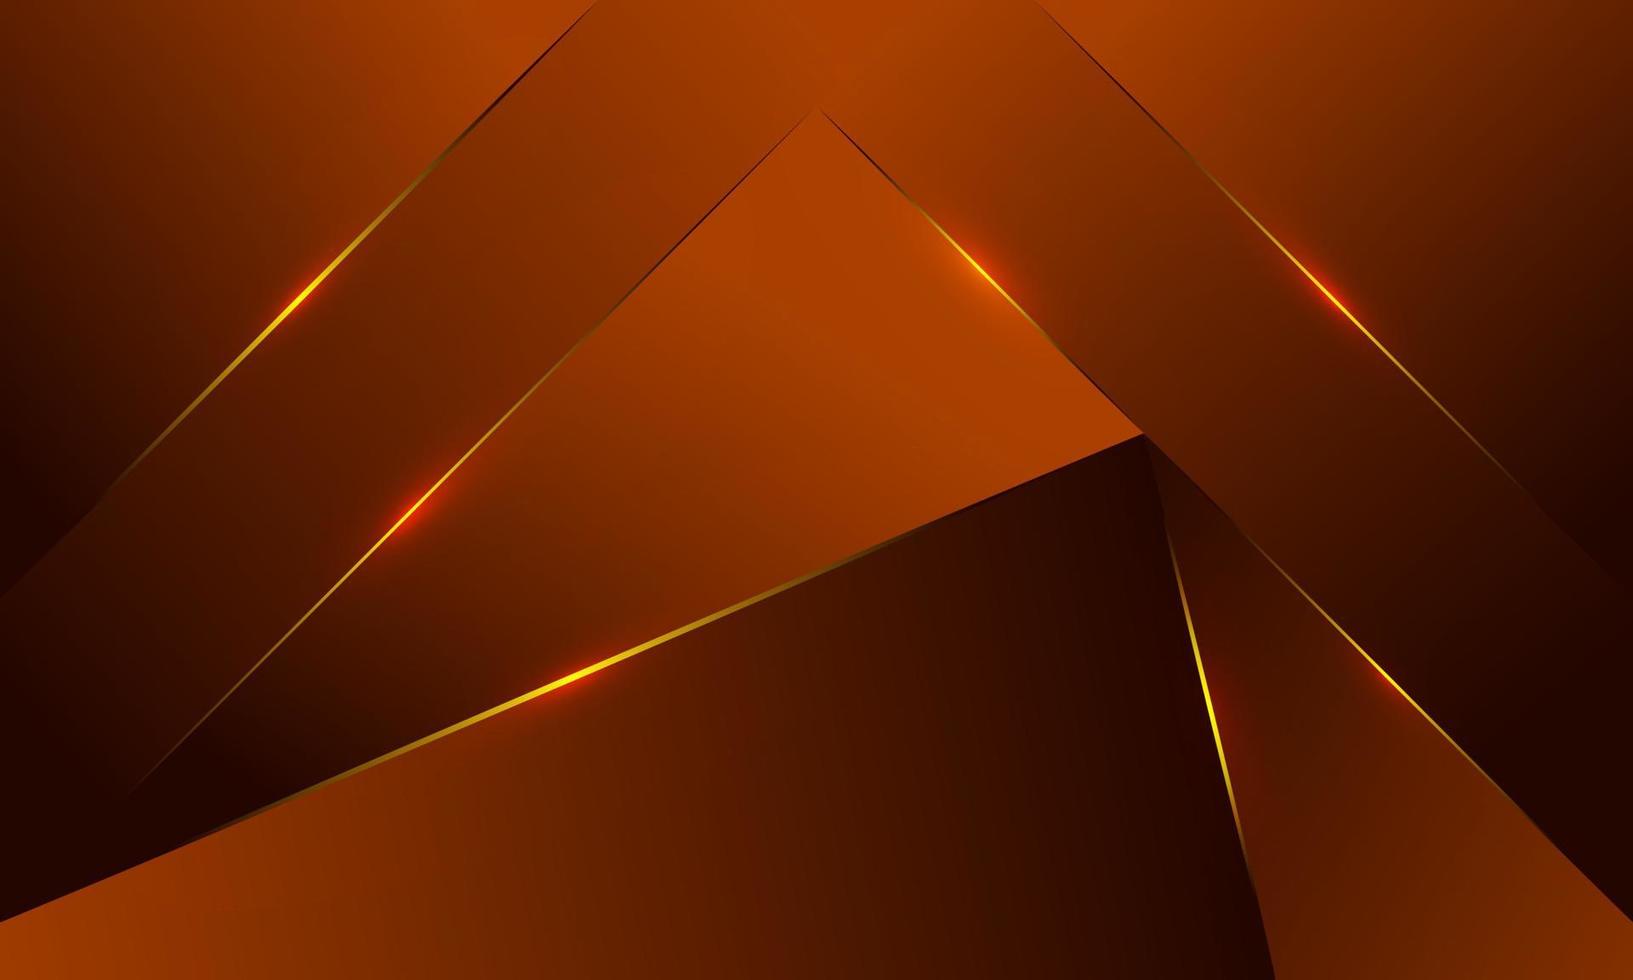 abstracte oranje veelhoek driehoeken vorm patroon achtergrond met gouden lijn en verlichting effect luxe stijl. illustratie vector digitale technologie ontwerpconcept.